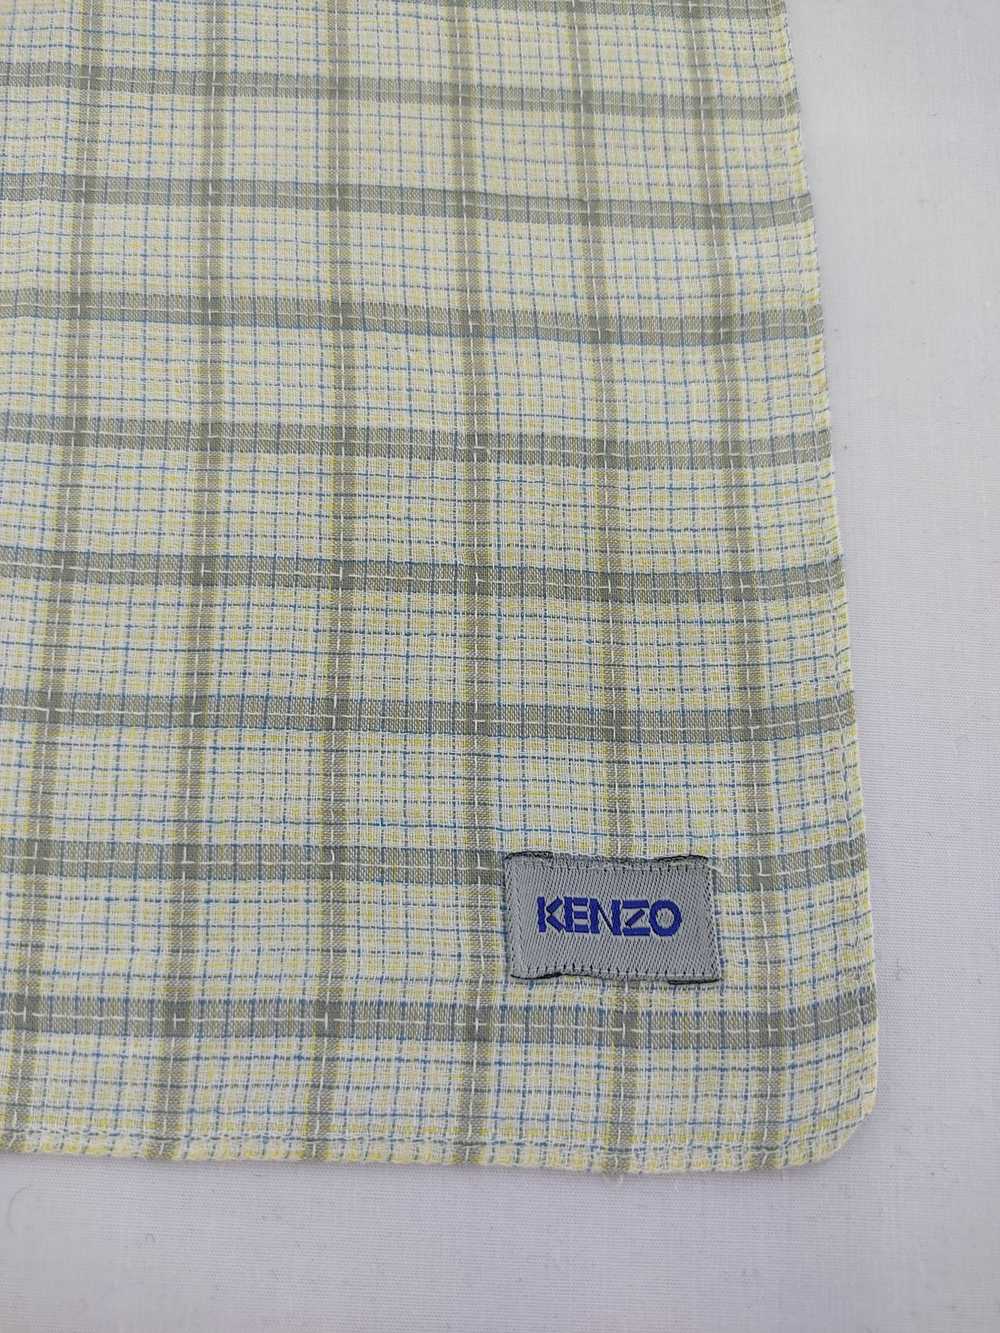 Kenzo × Streetwear Kenzo Handkerchief / Neckwear … - image 4